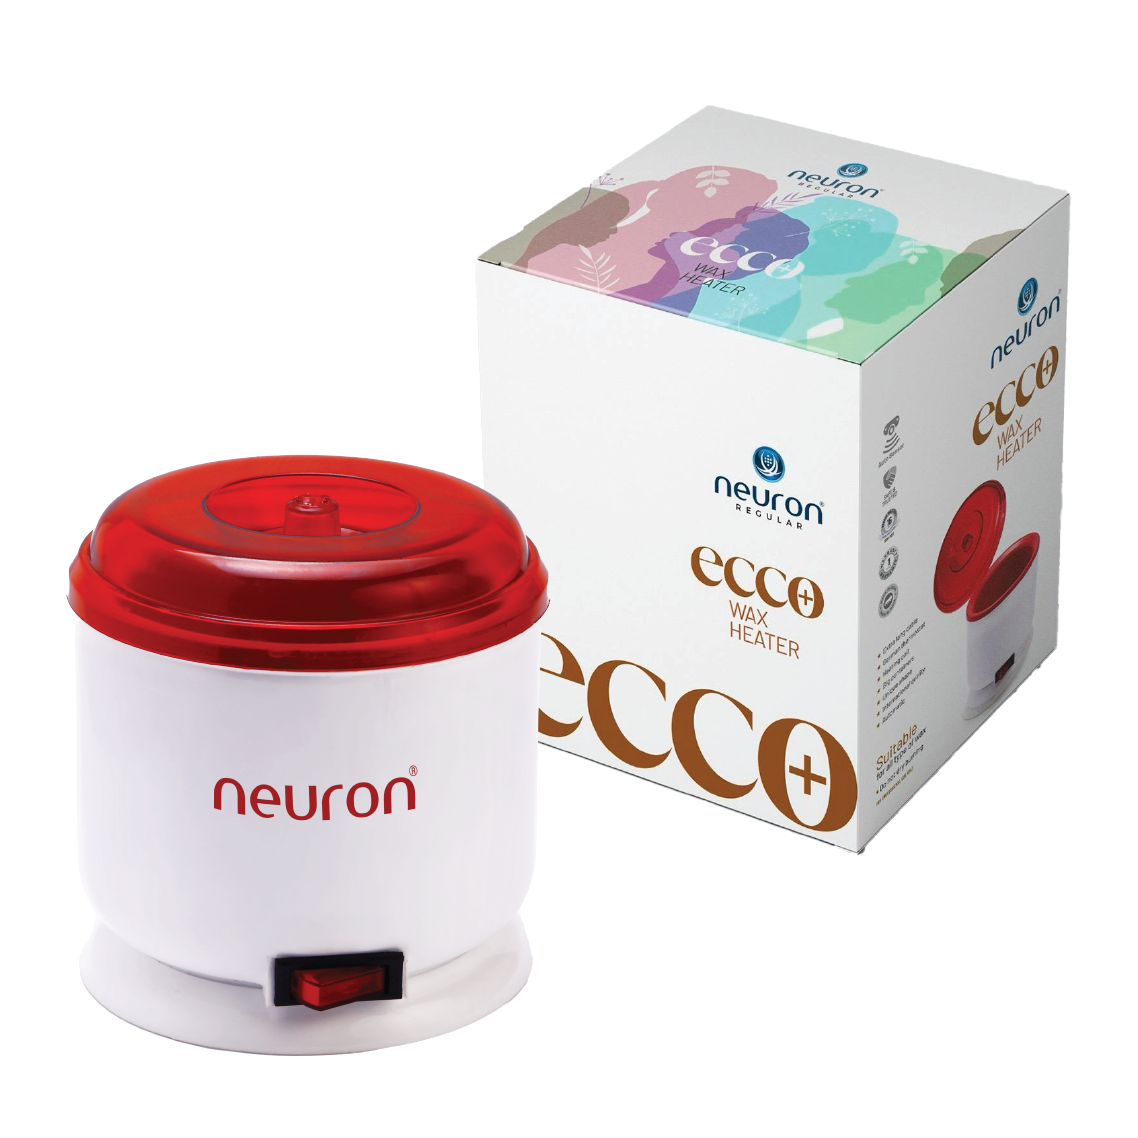 ECCO+ Wax Heater